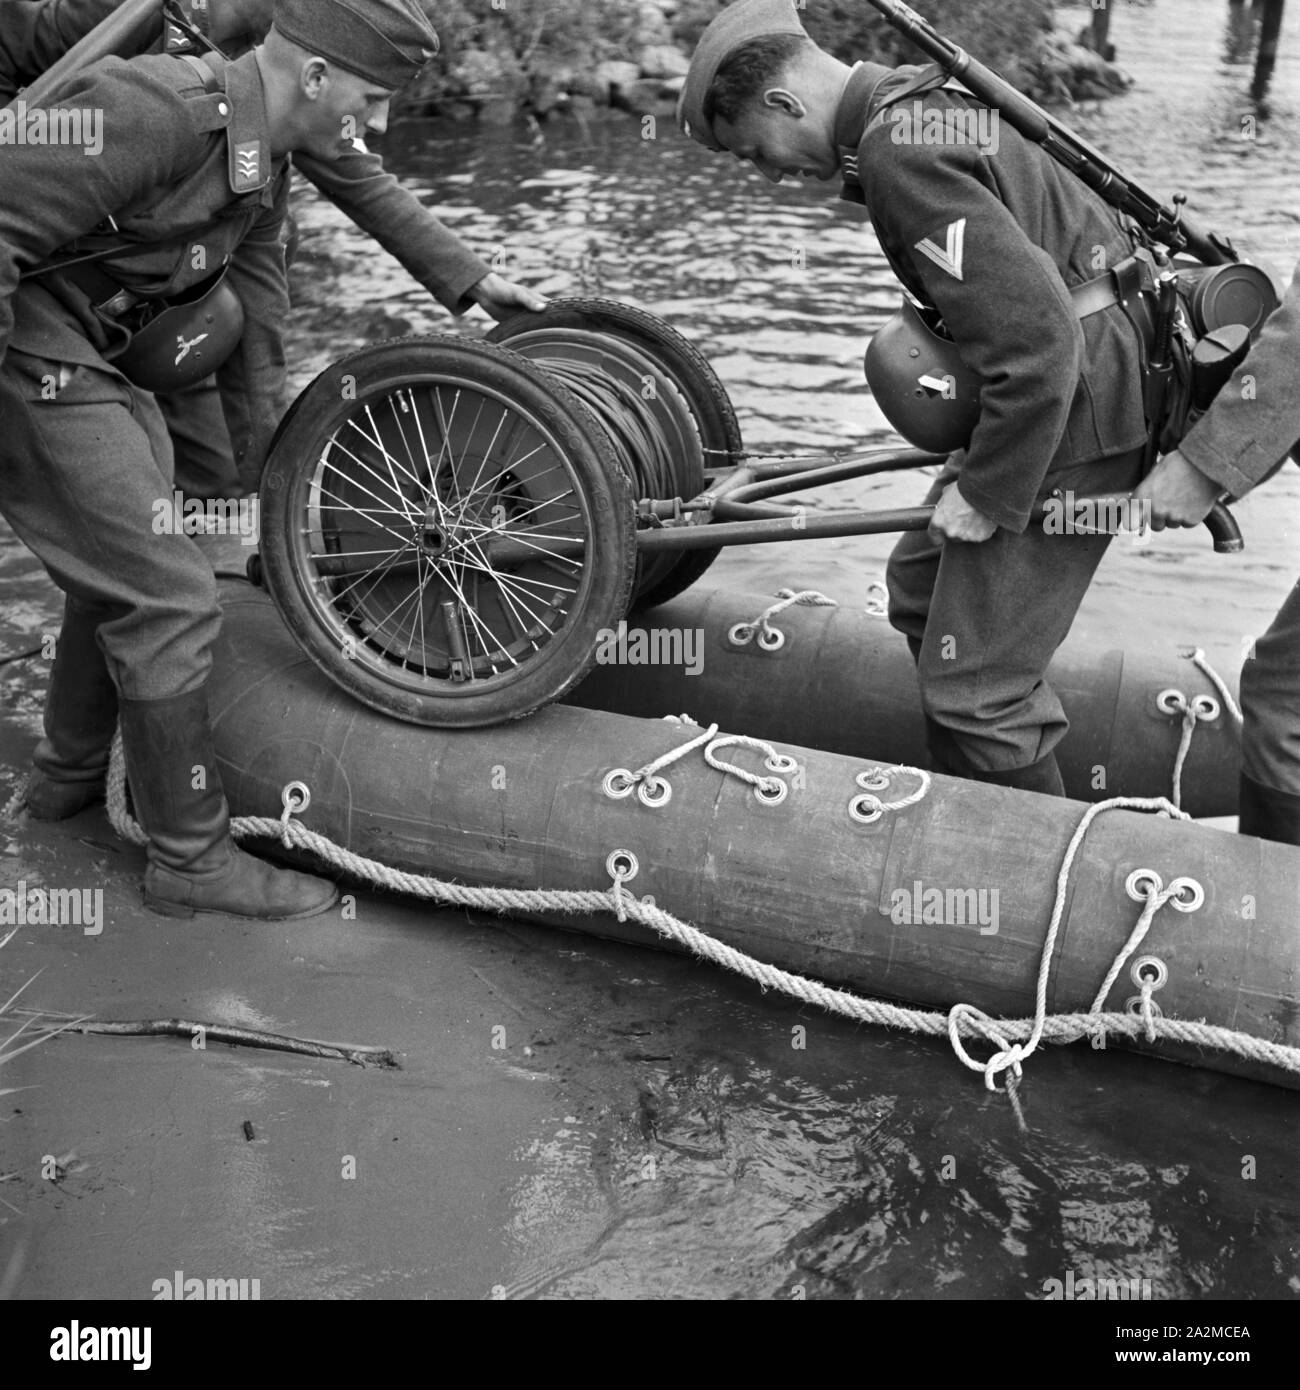 Original-Bildunterschrift: Der Kabelwagen wird auf dem Boot befestigt, Deutschland 1940er Jahre. The cable drum is loaded to the rubber boat, Germany 1940s. Stock Photo